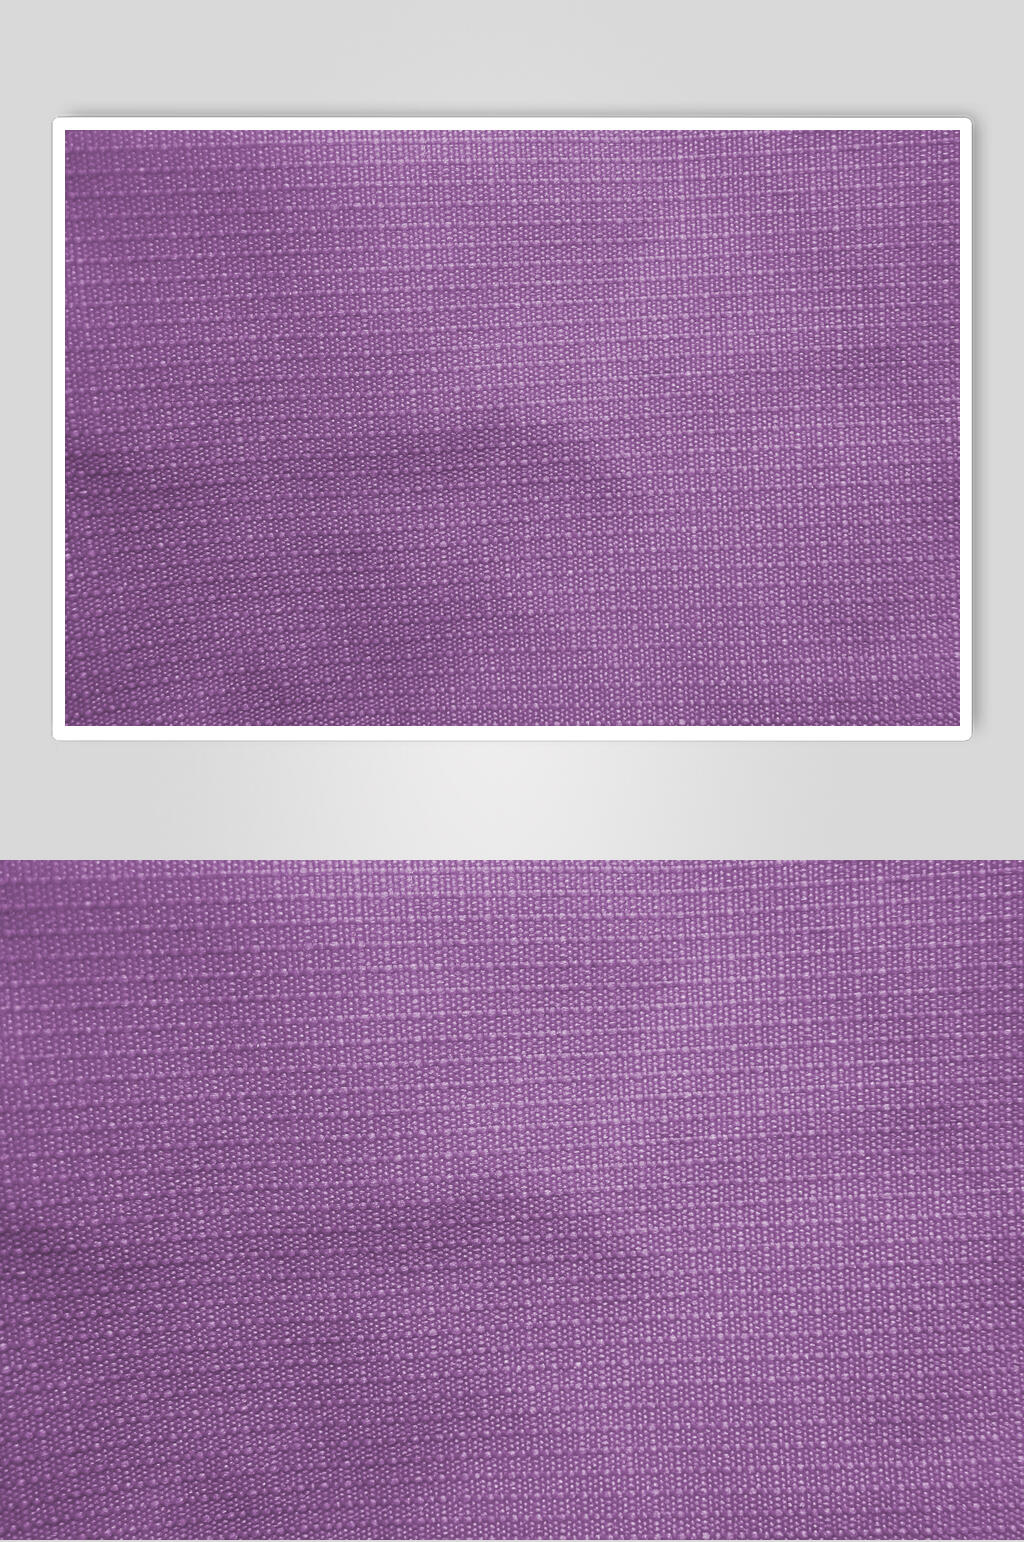 紫色地毯布纹布料贴图